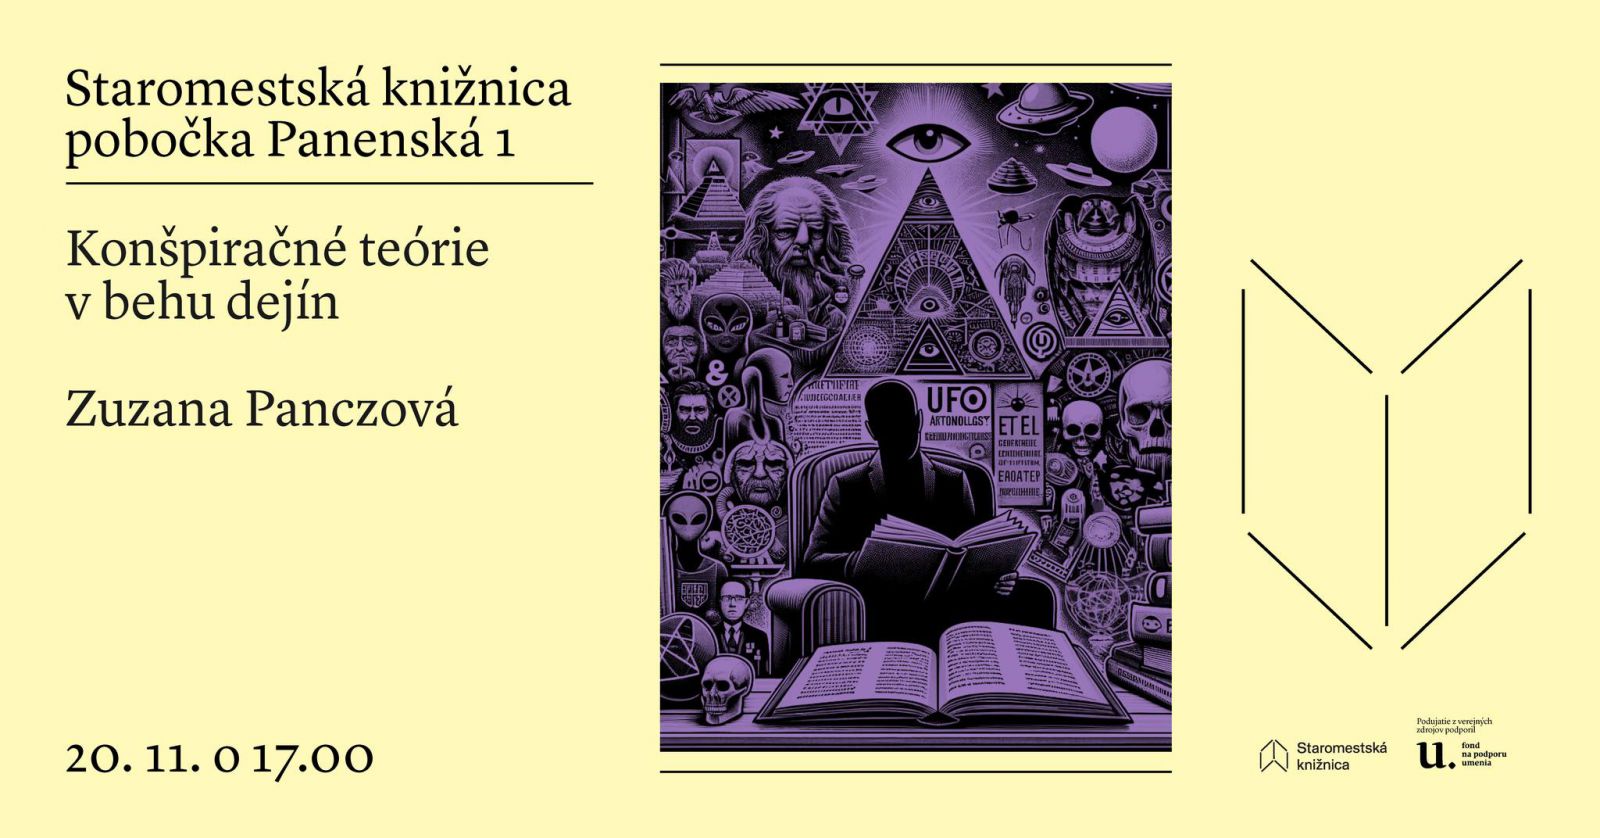 Konšpiračné teórie v behu dejín 20. 11. o 17.00 v Staromestskej knižnici na Panenskej 1 s etnologičkou Zuzanou Panczovou